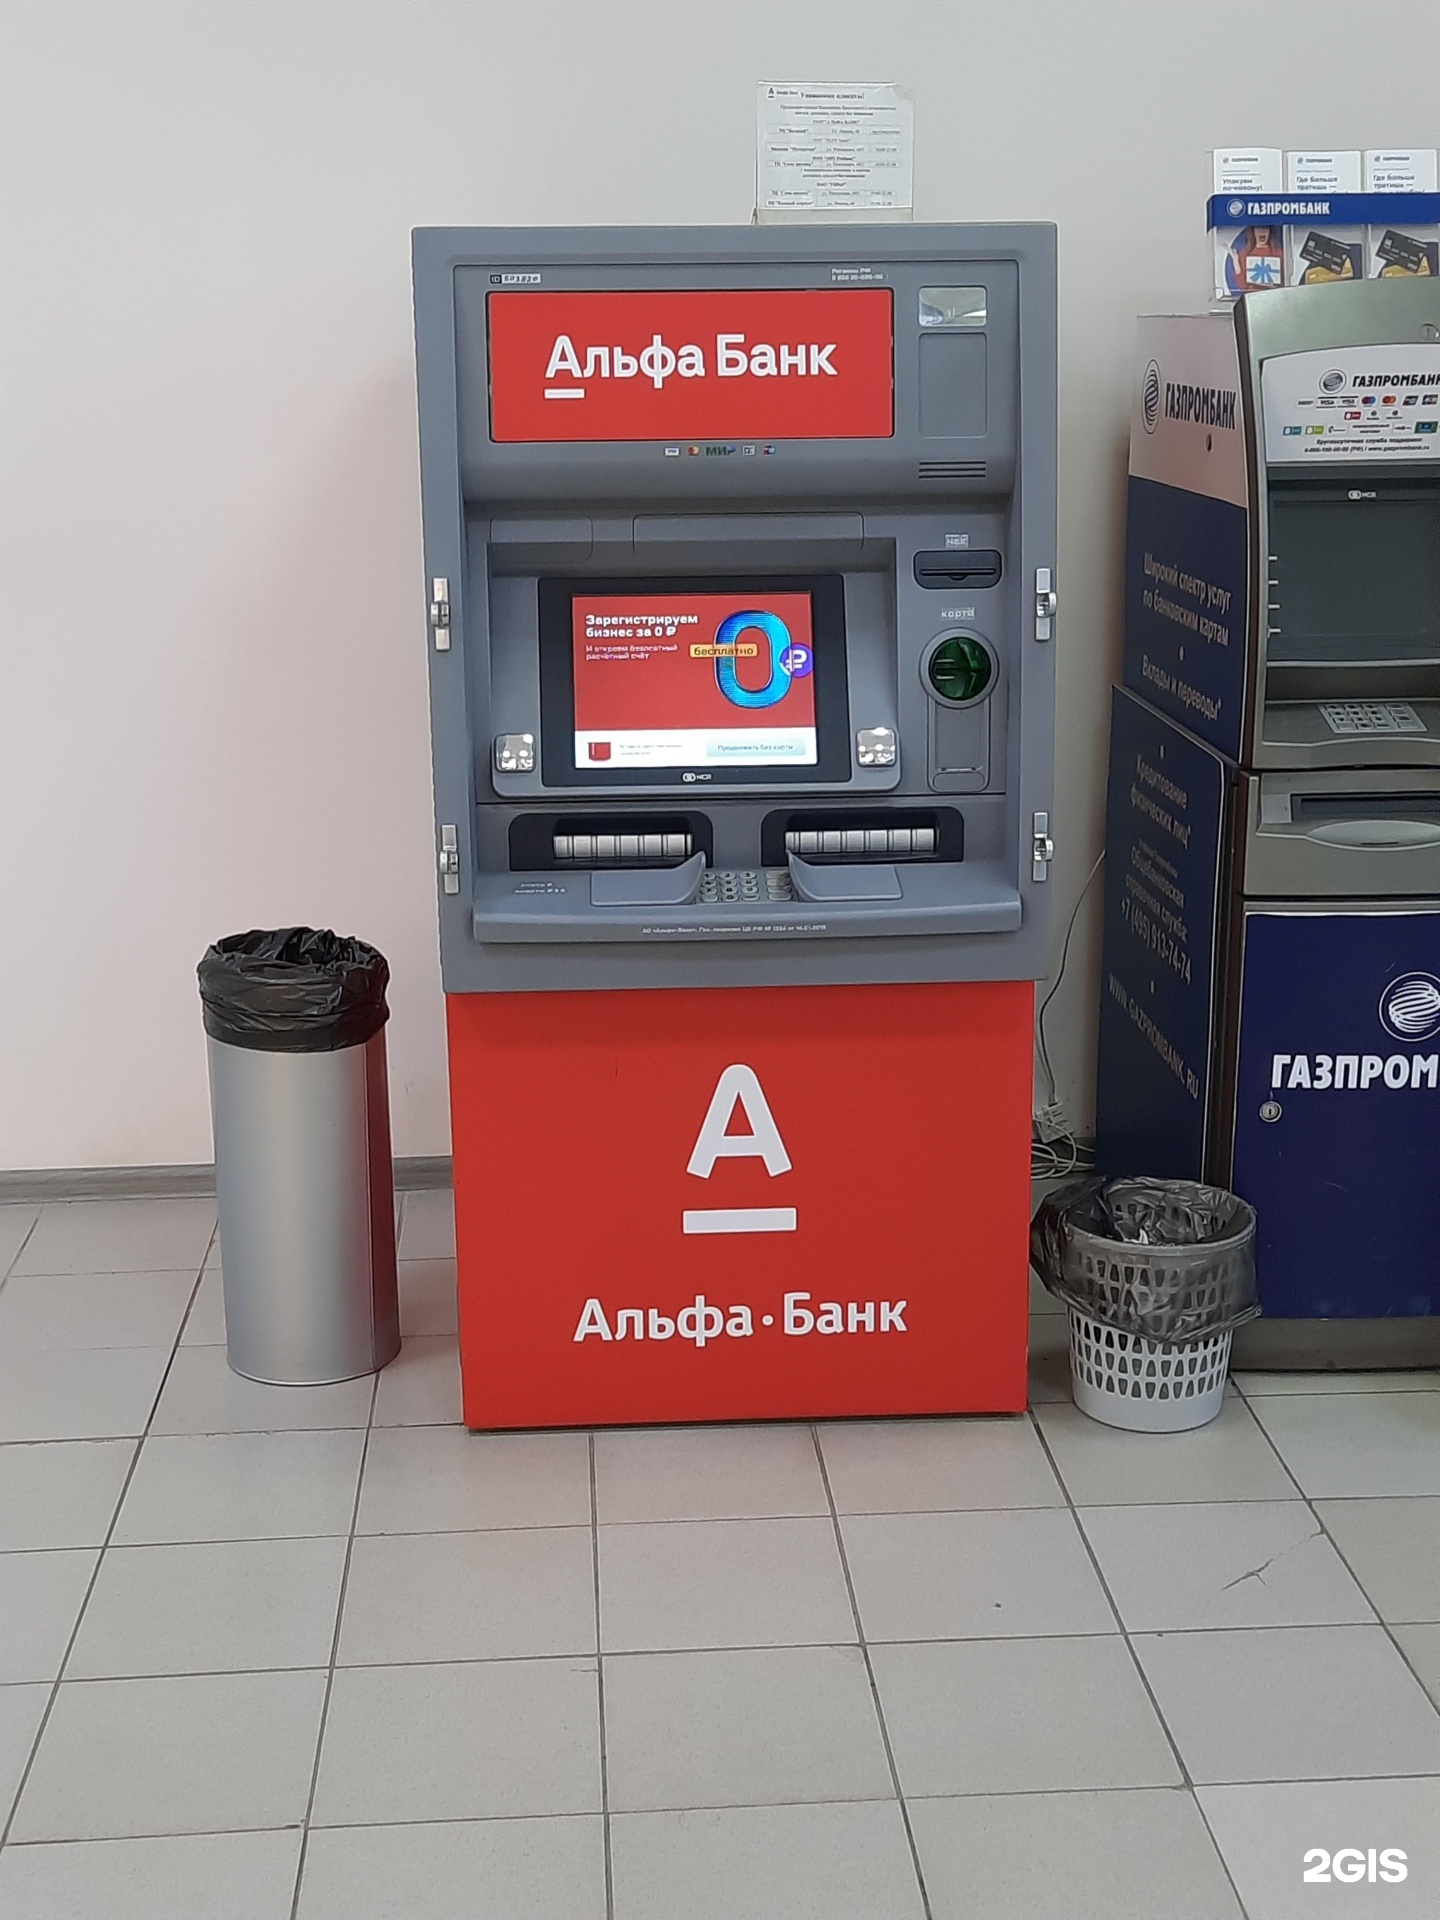 фото банкоматов альфа банка